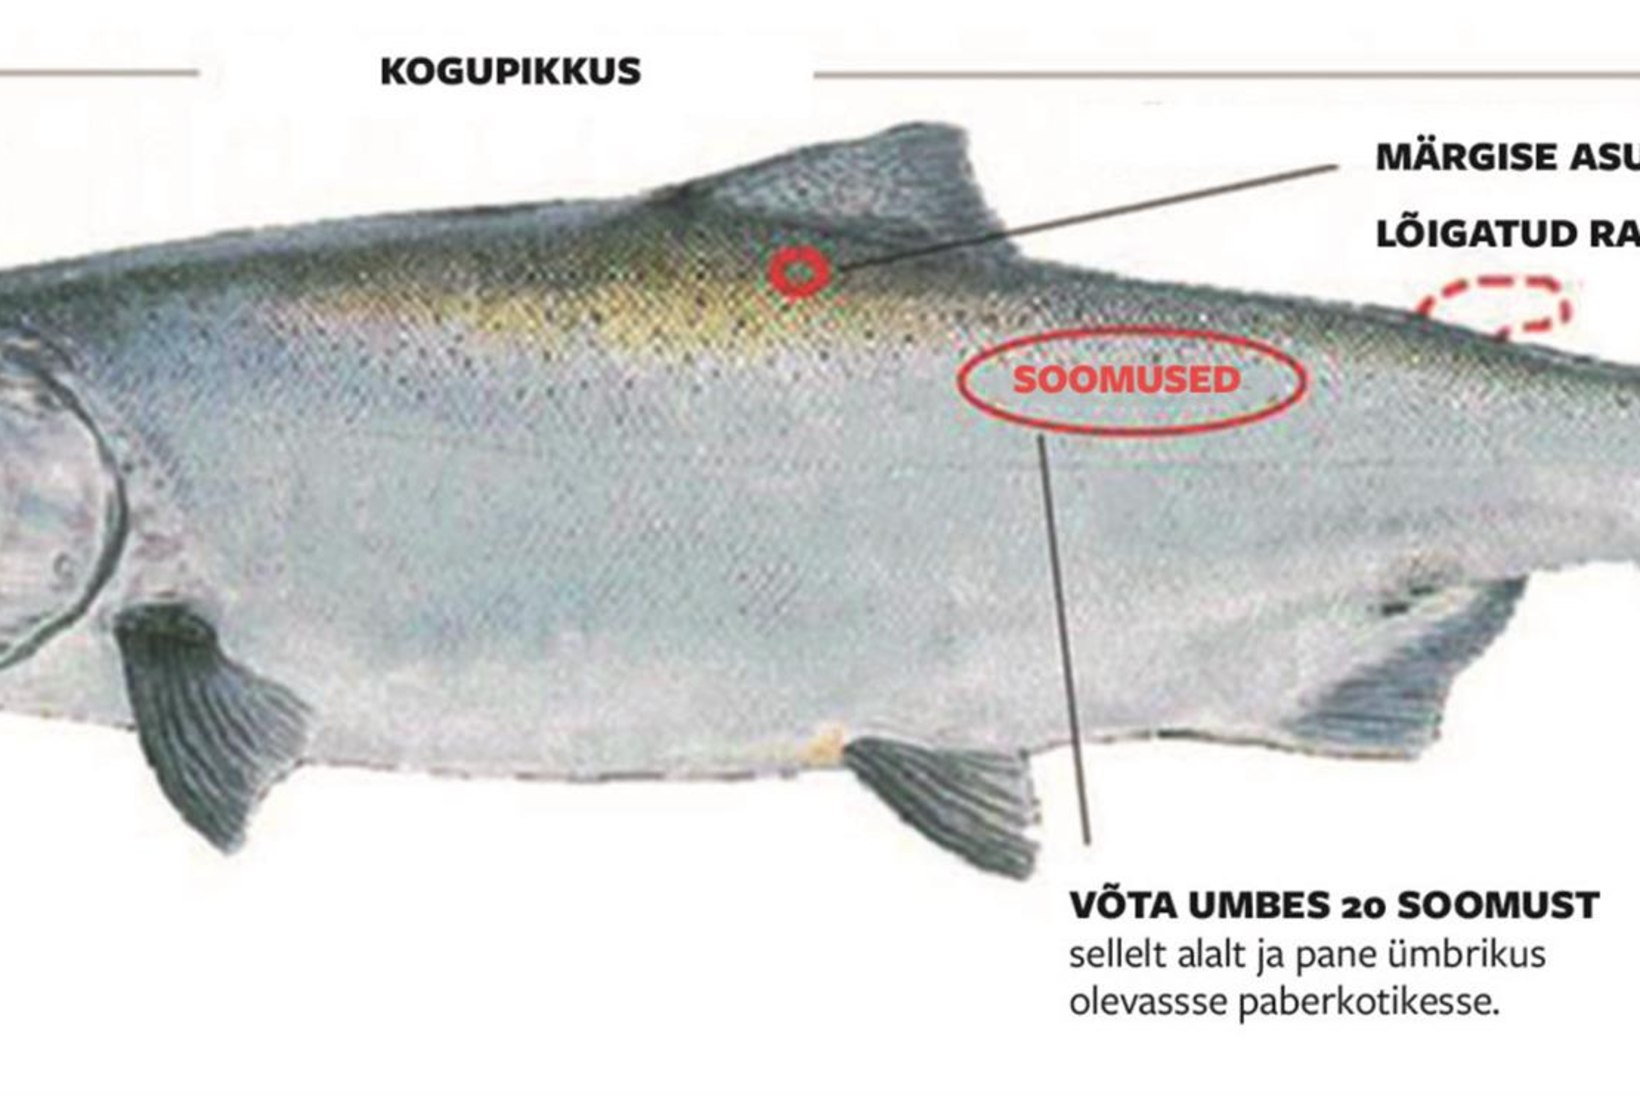 Kalade märgistamisest ja märgistatud kalade taaspüügiandmete kogumisest RMK Põlula kalakasvatus-keskuses